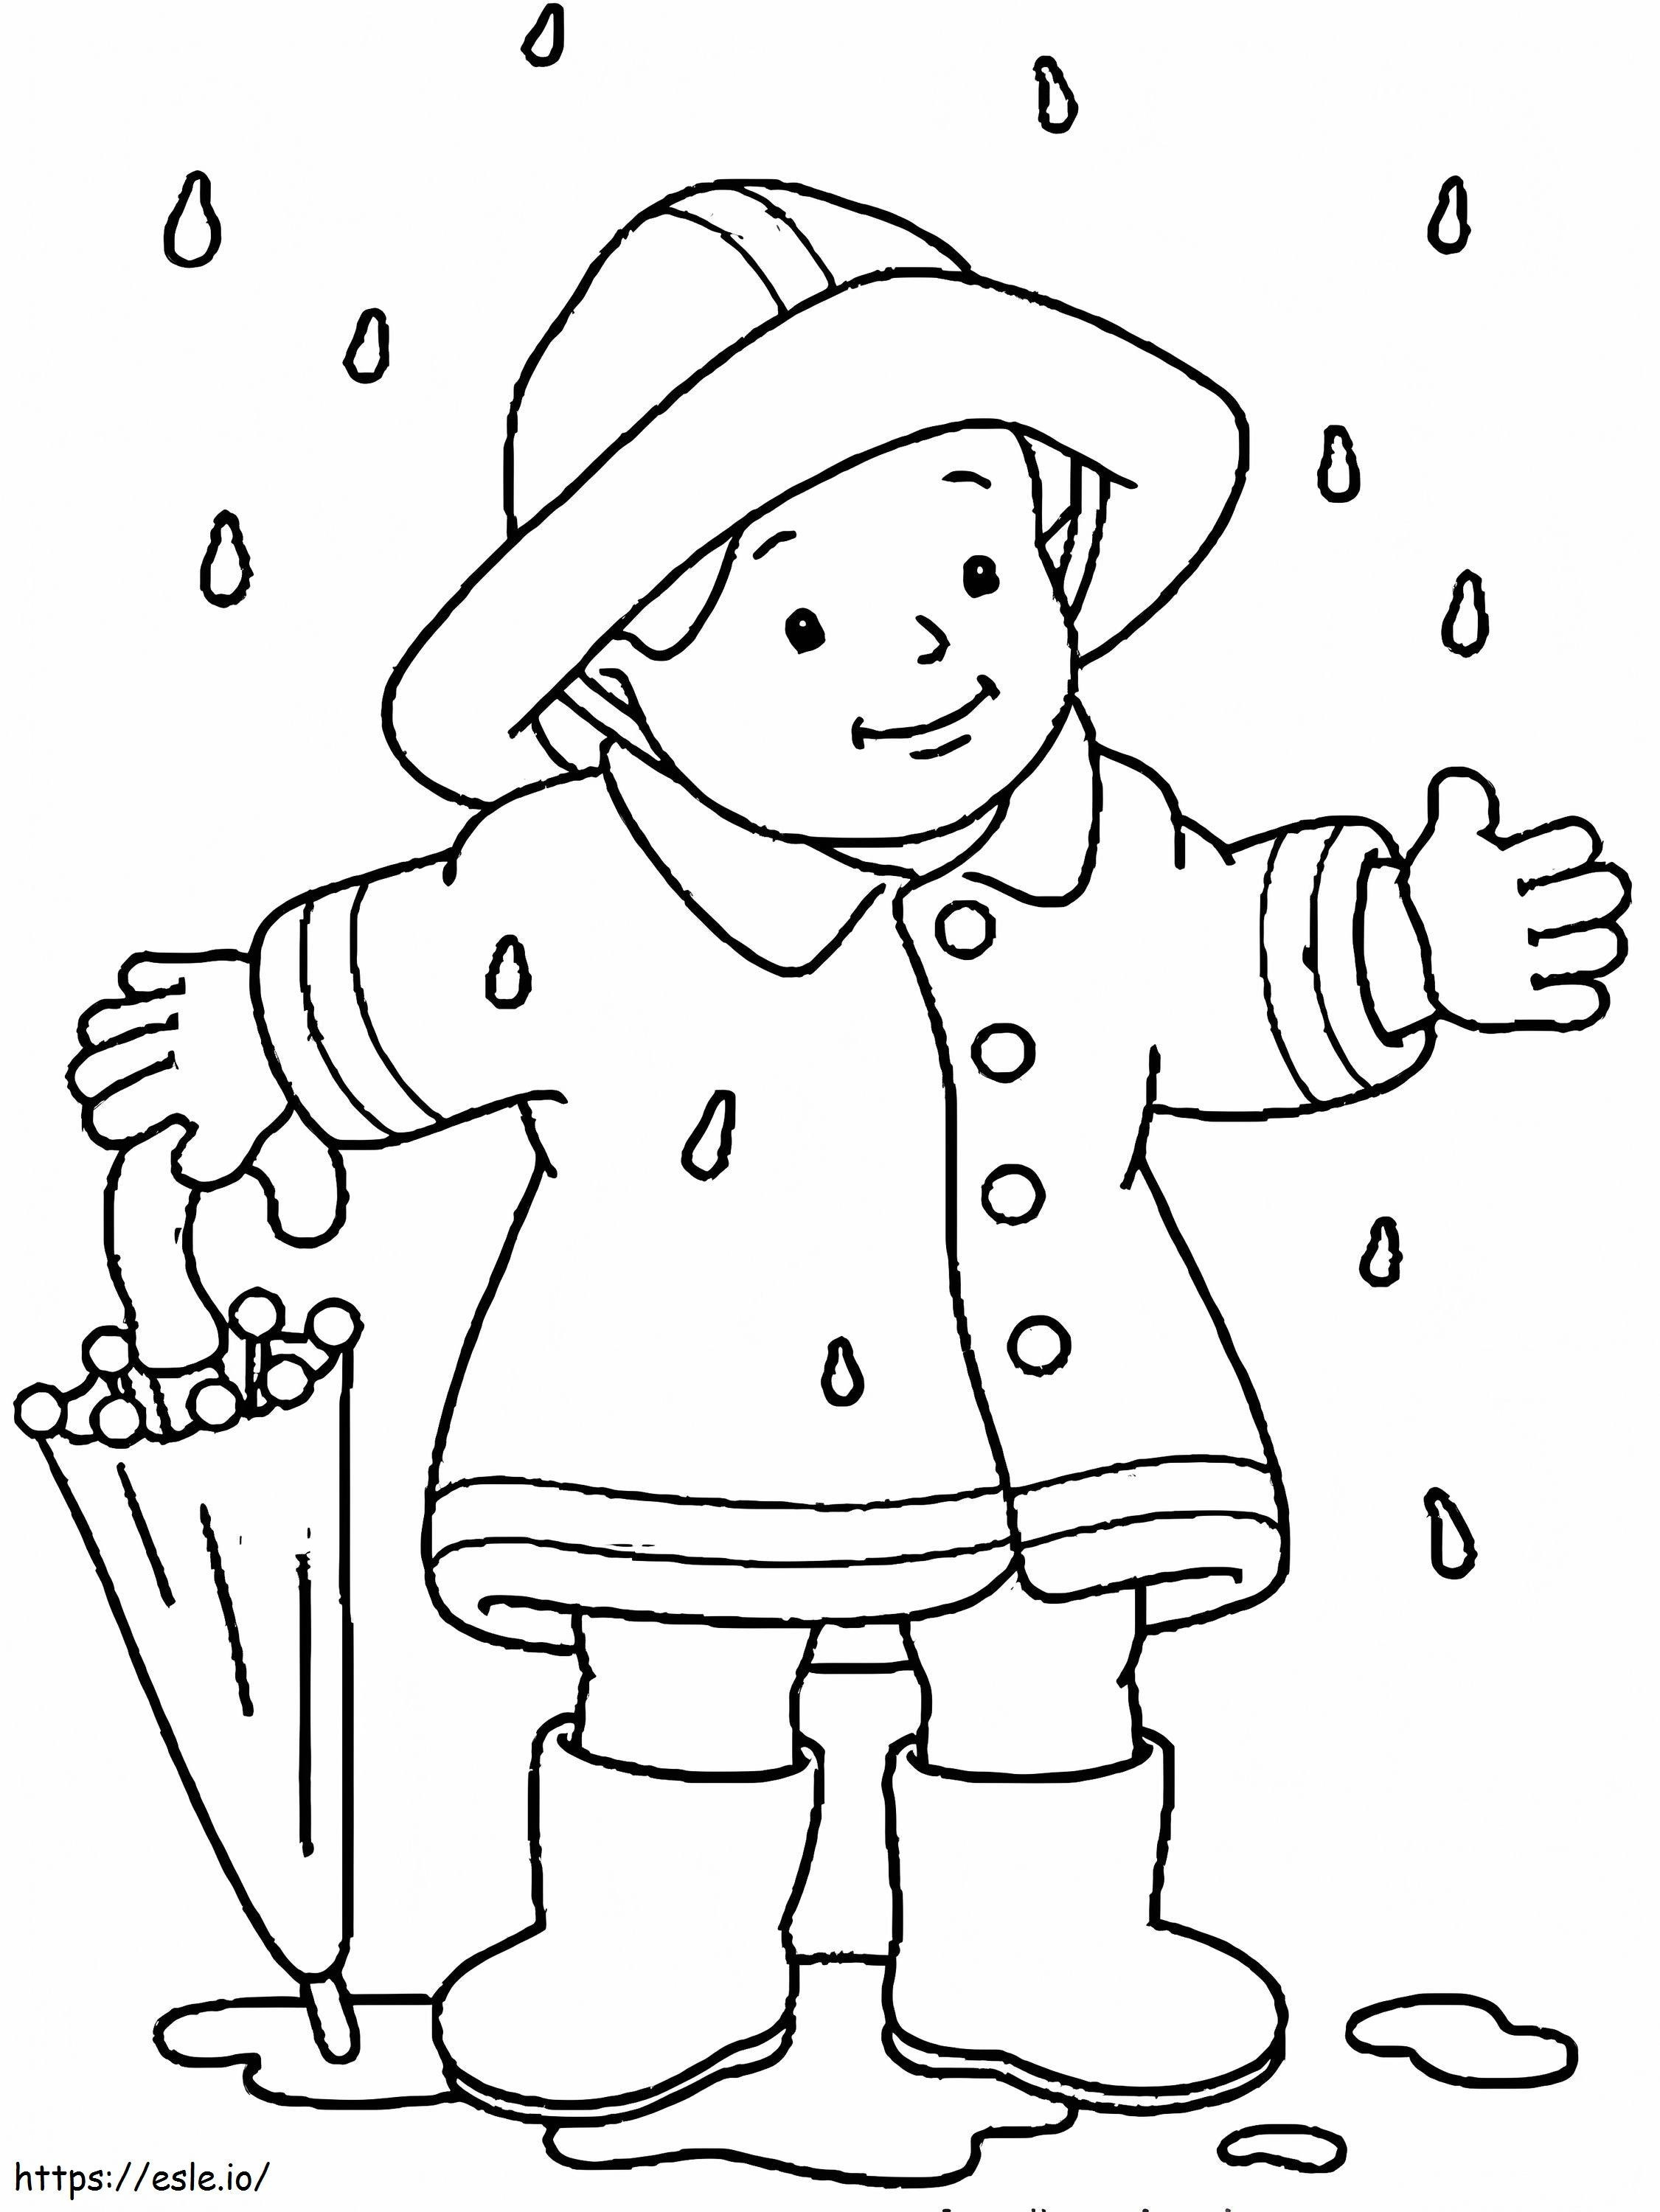 Menino segurando um guarda-chuva em pé na chuva no outono para colorir